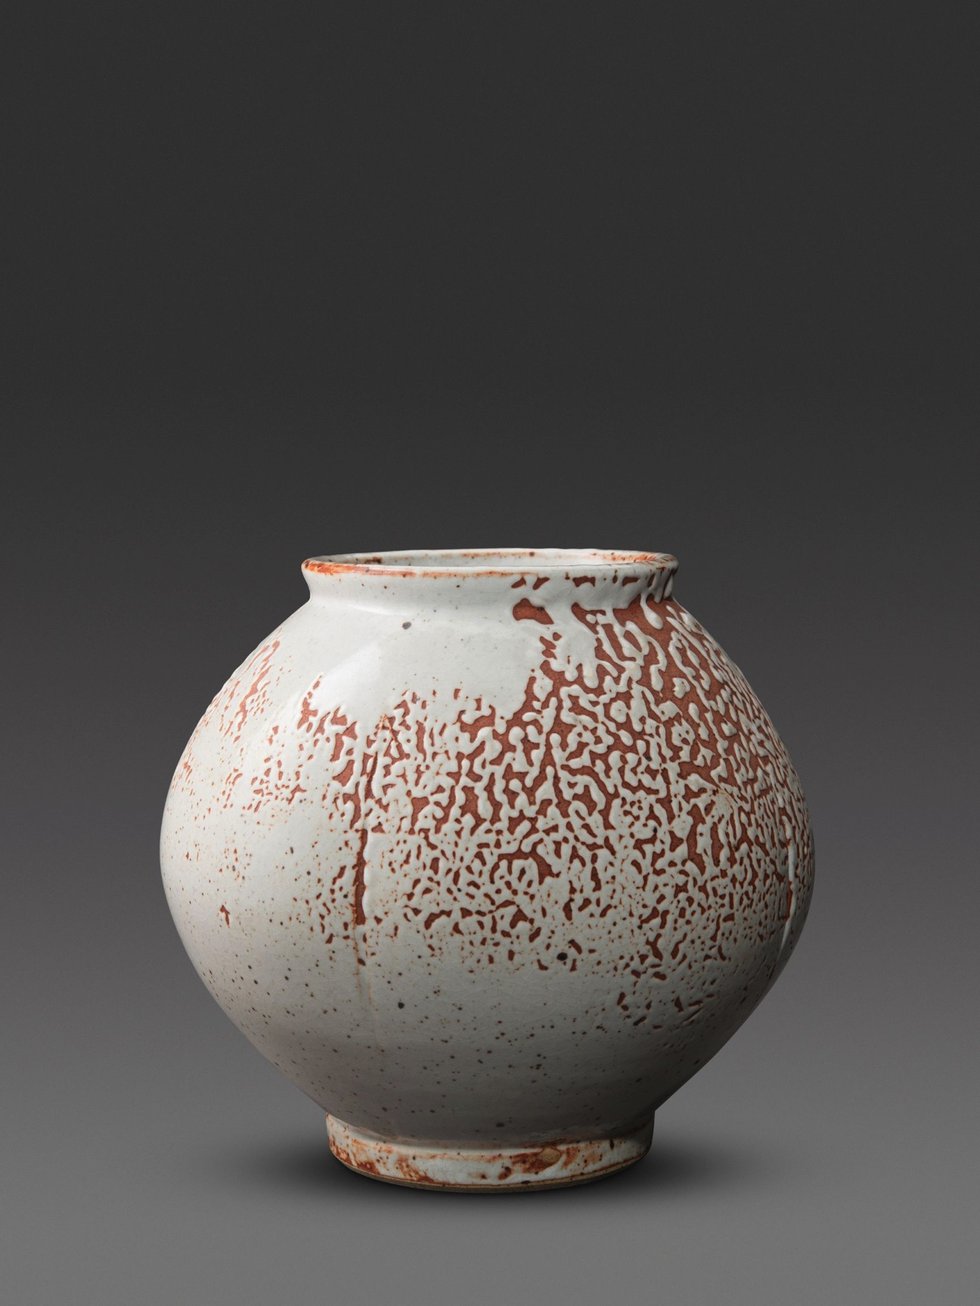 Hiro Urakami, "Vase," 1980's